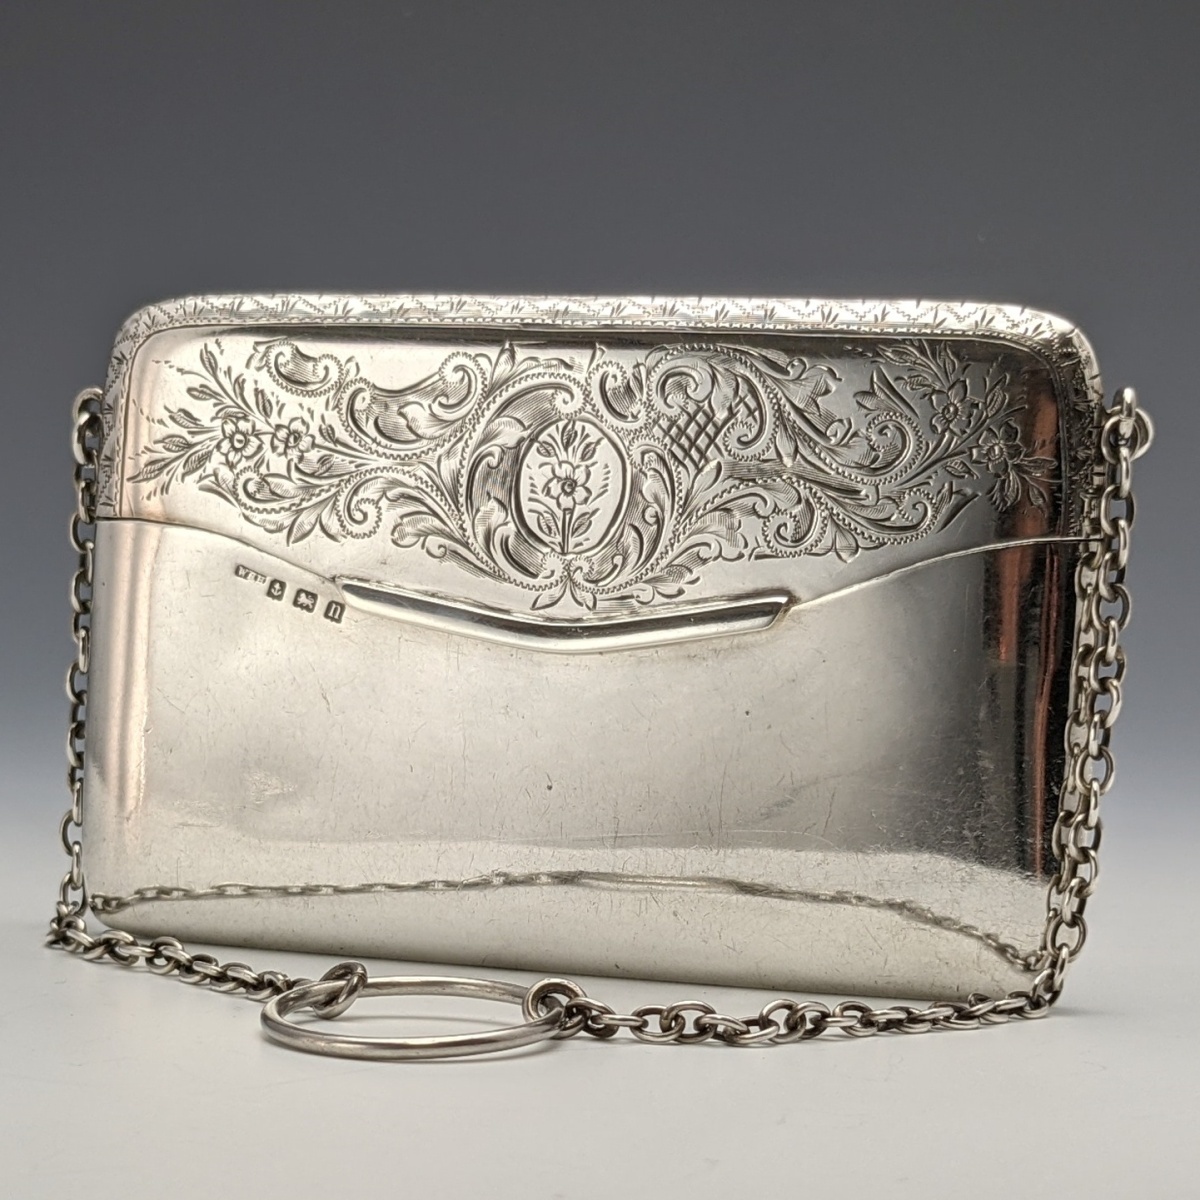 1912年 英国アンティーク 純銀製 チェーン付 カードケース 88g W H Haseler 装身具